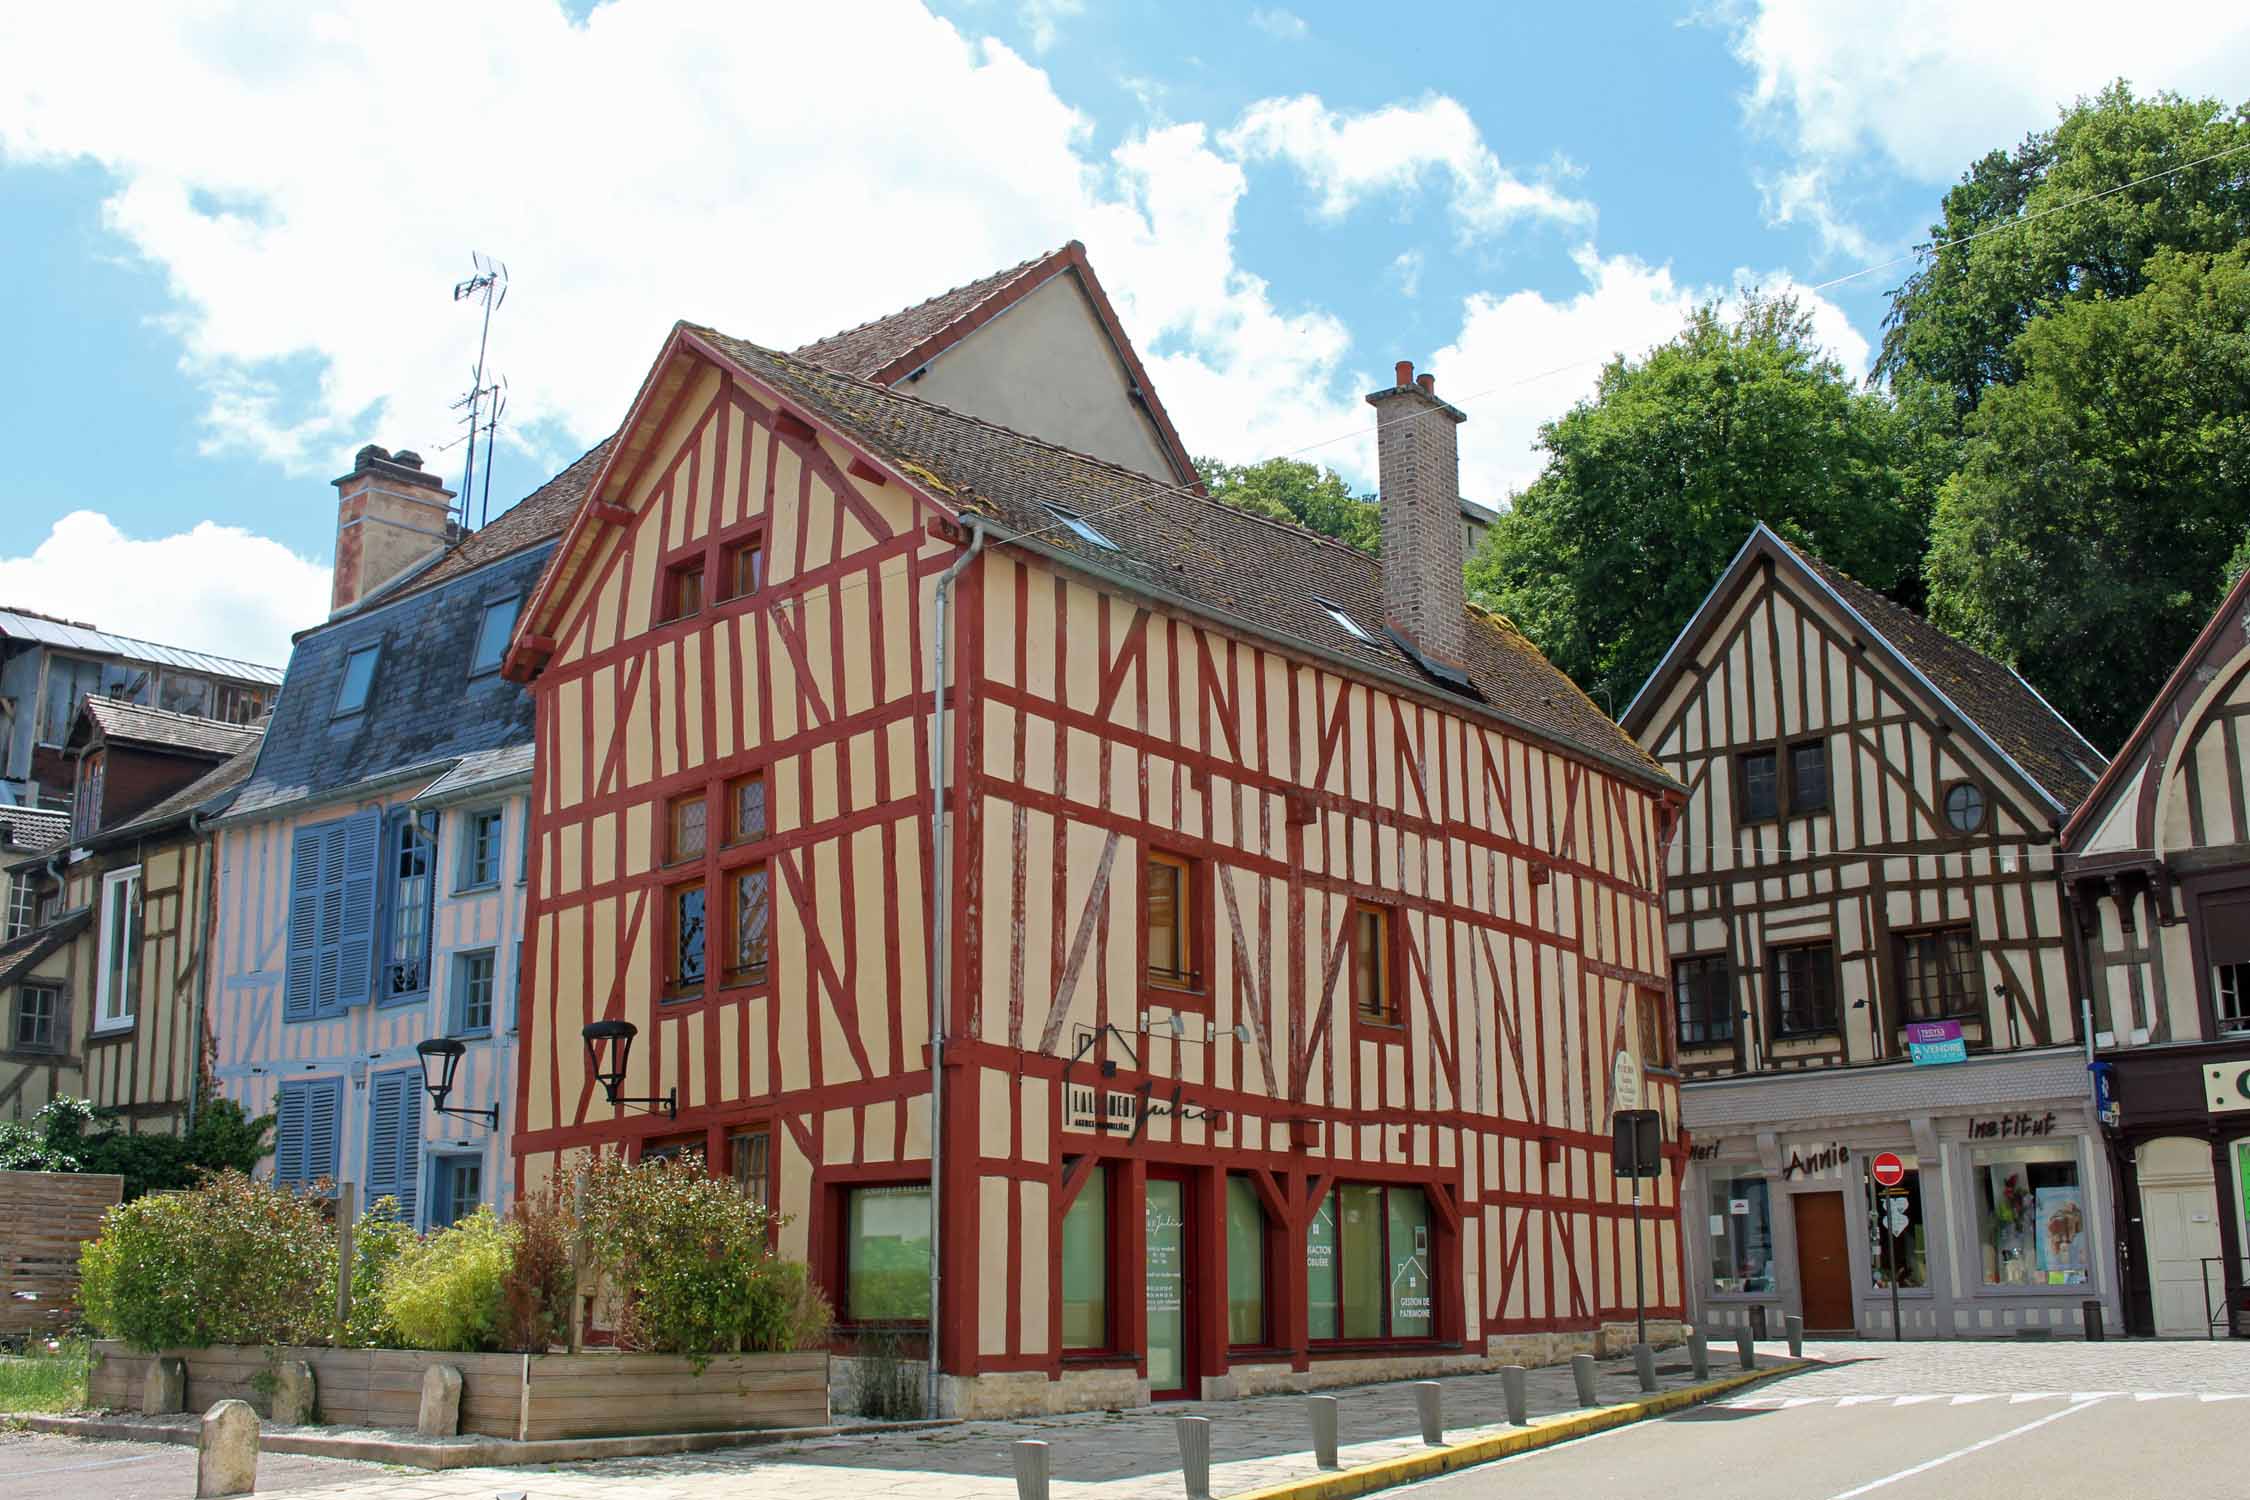 Bar-sur-Seine, maisons typiques à colombages